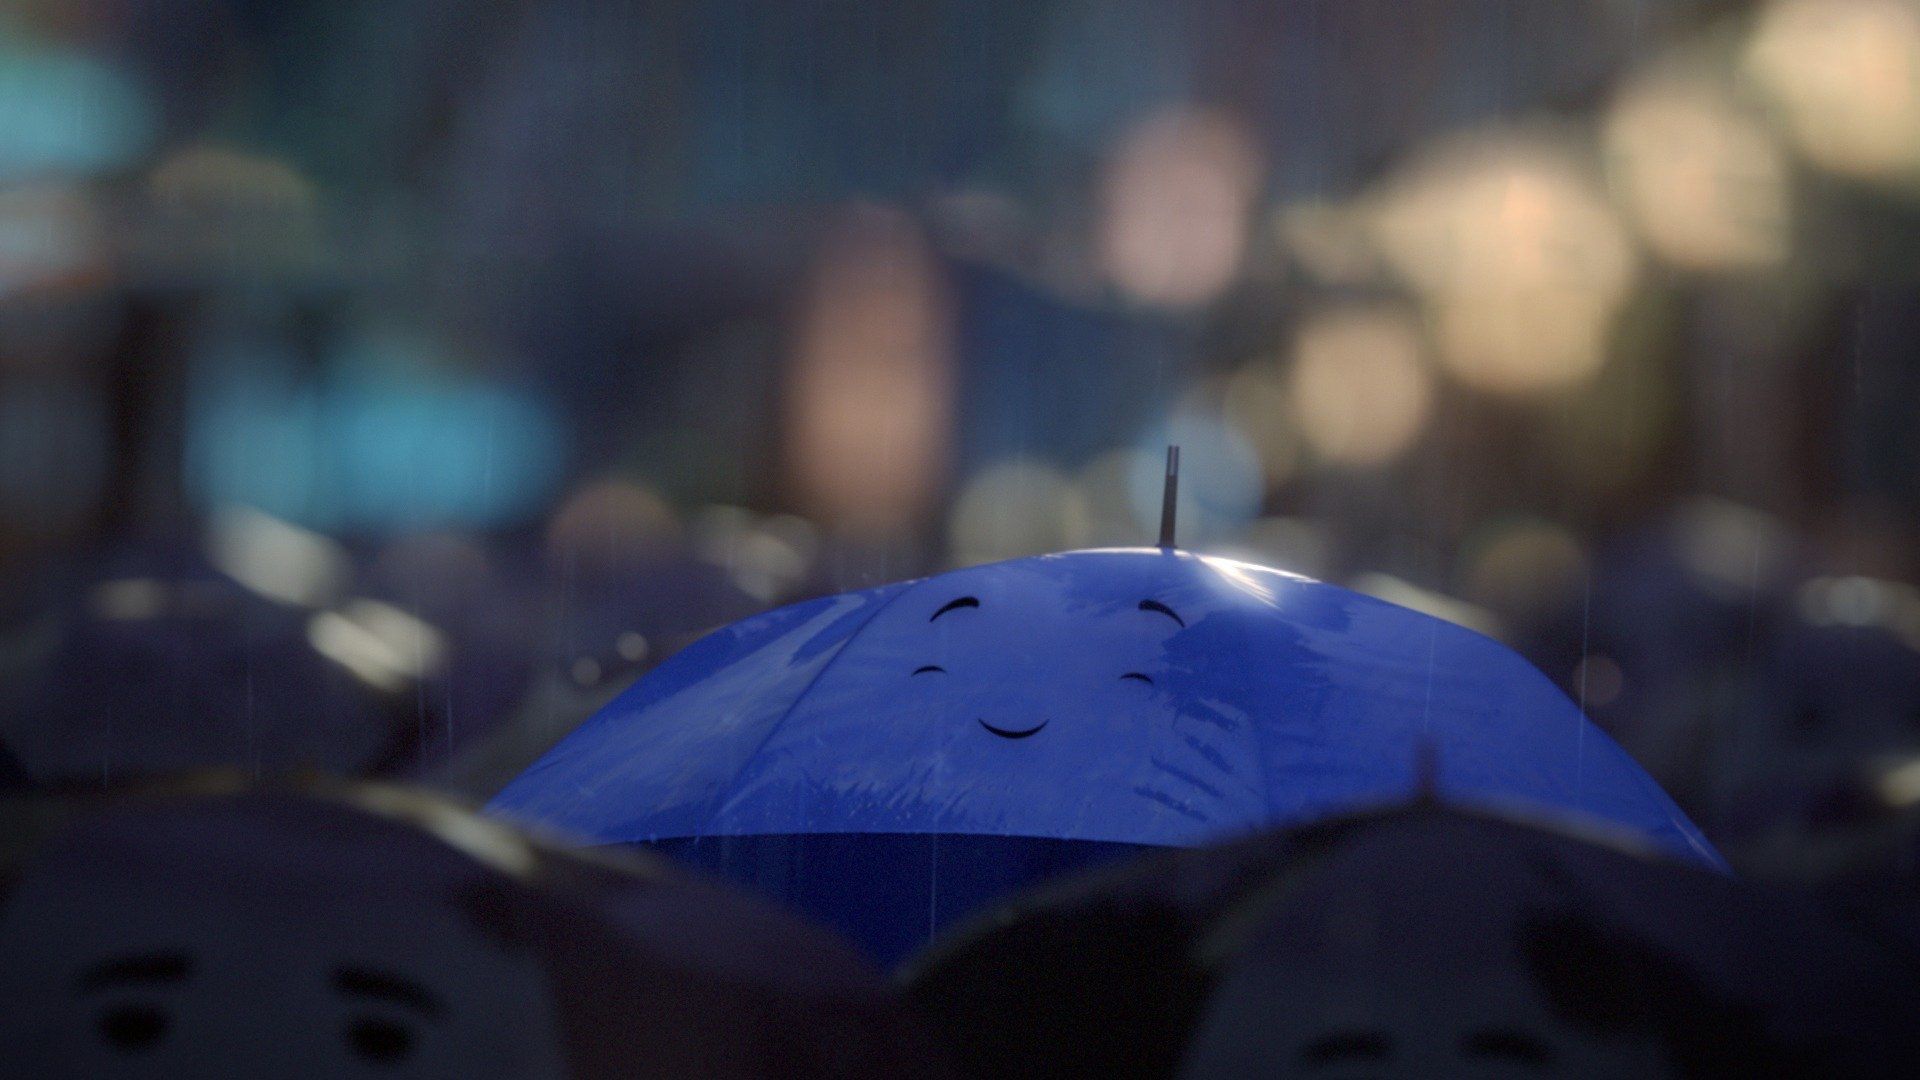 The Blue Umbrella Backdrop